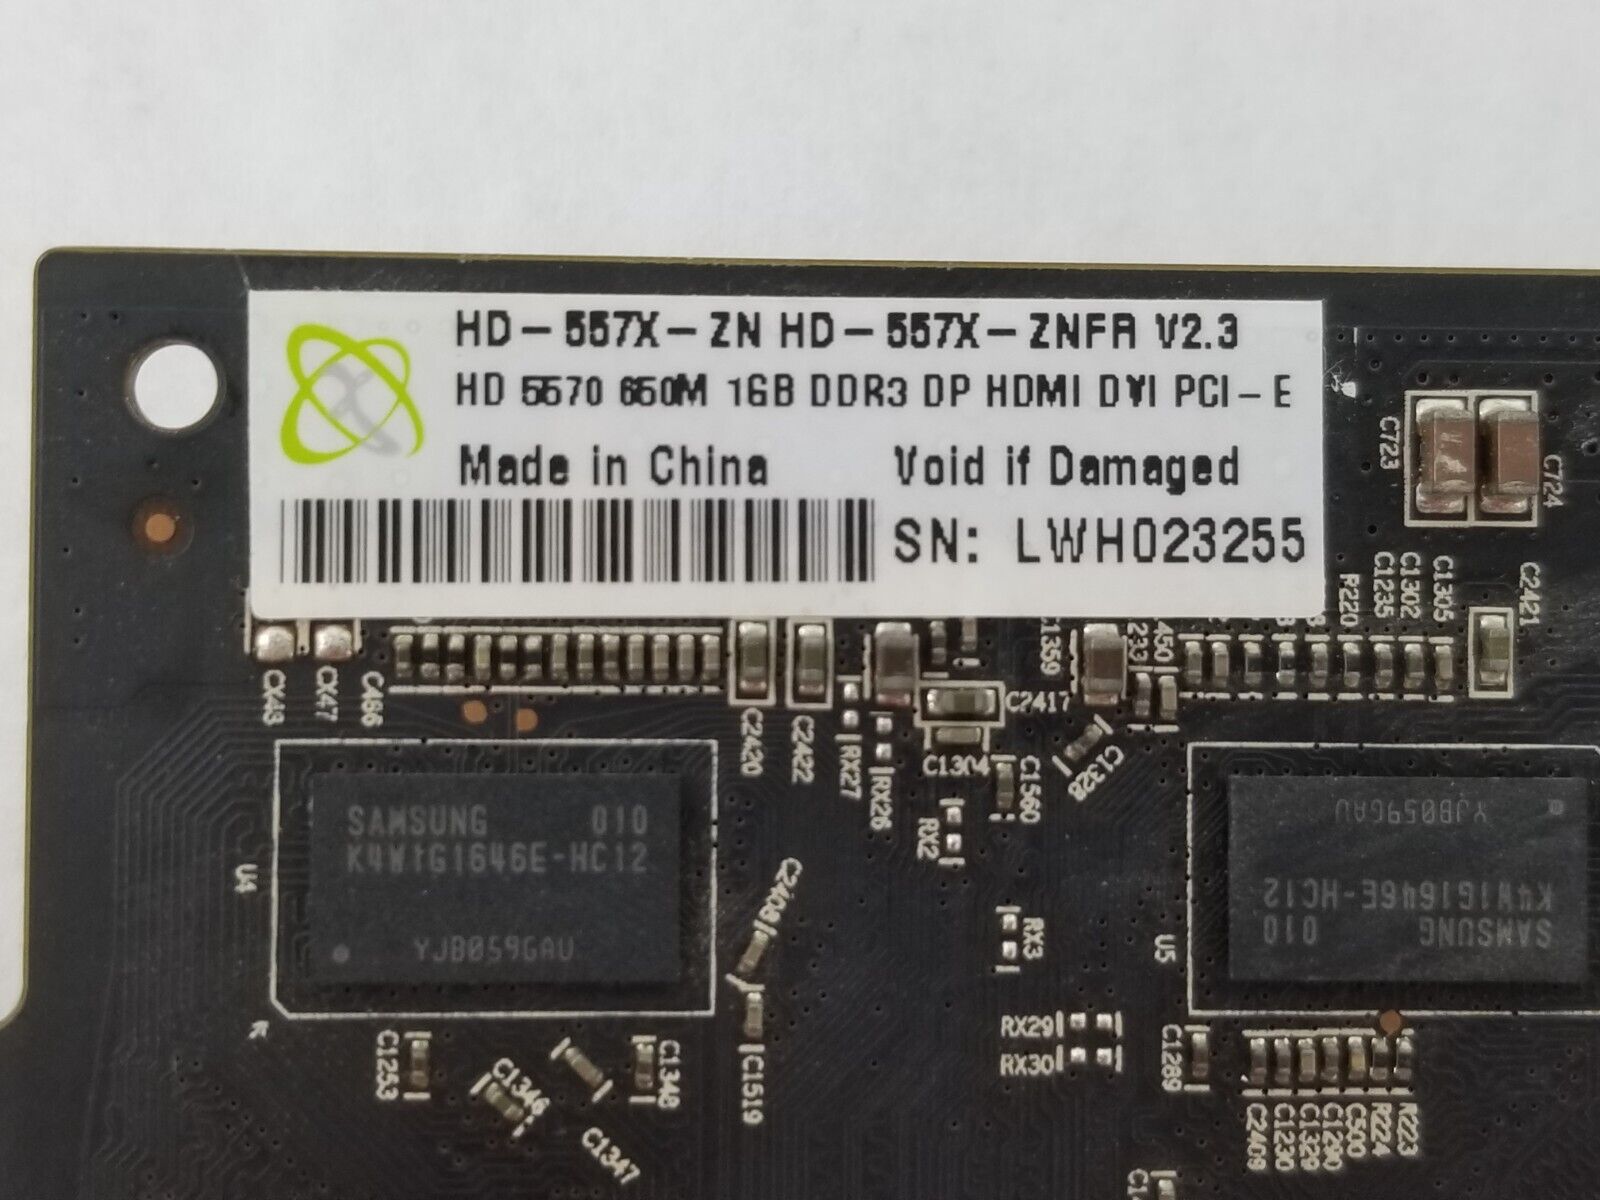 HD-557X-ZN XFX AMD Radeon HD 5570 Video Card 1GB DDR3 DP HD Video Card